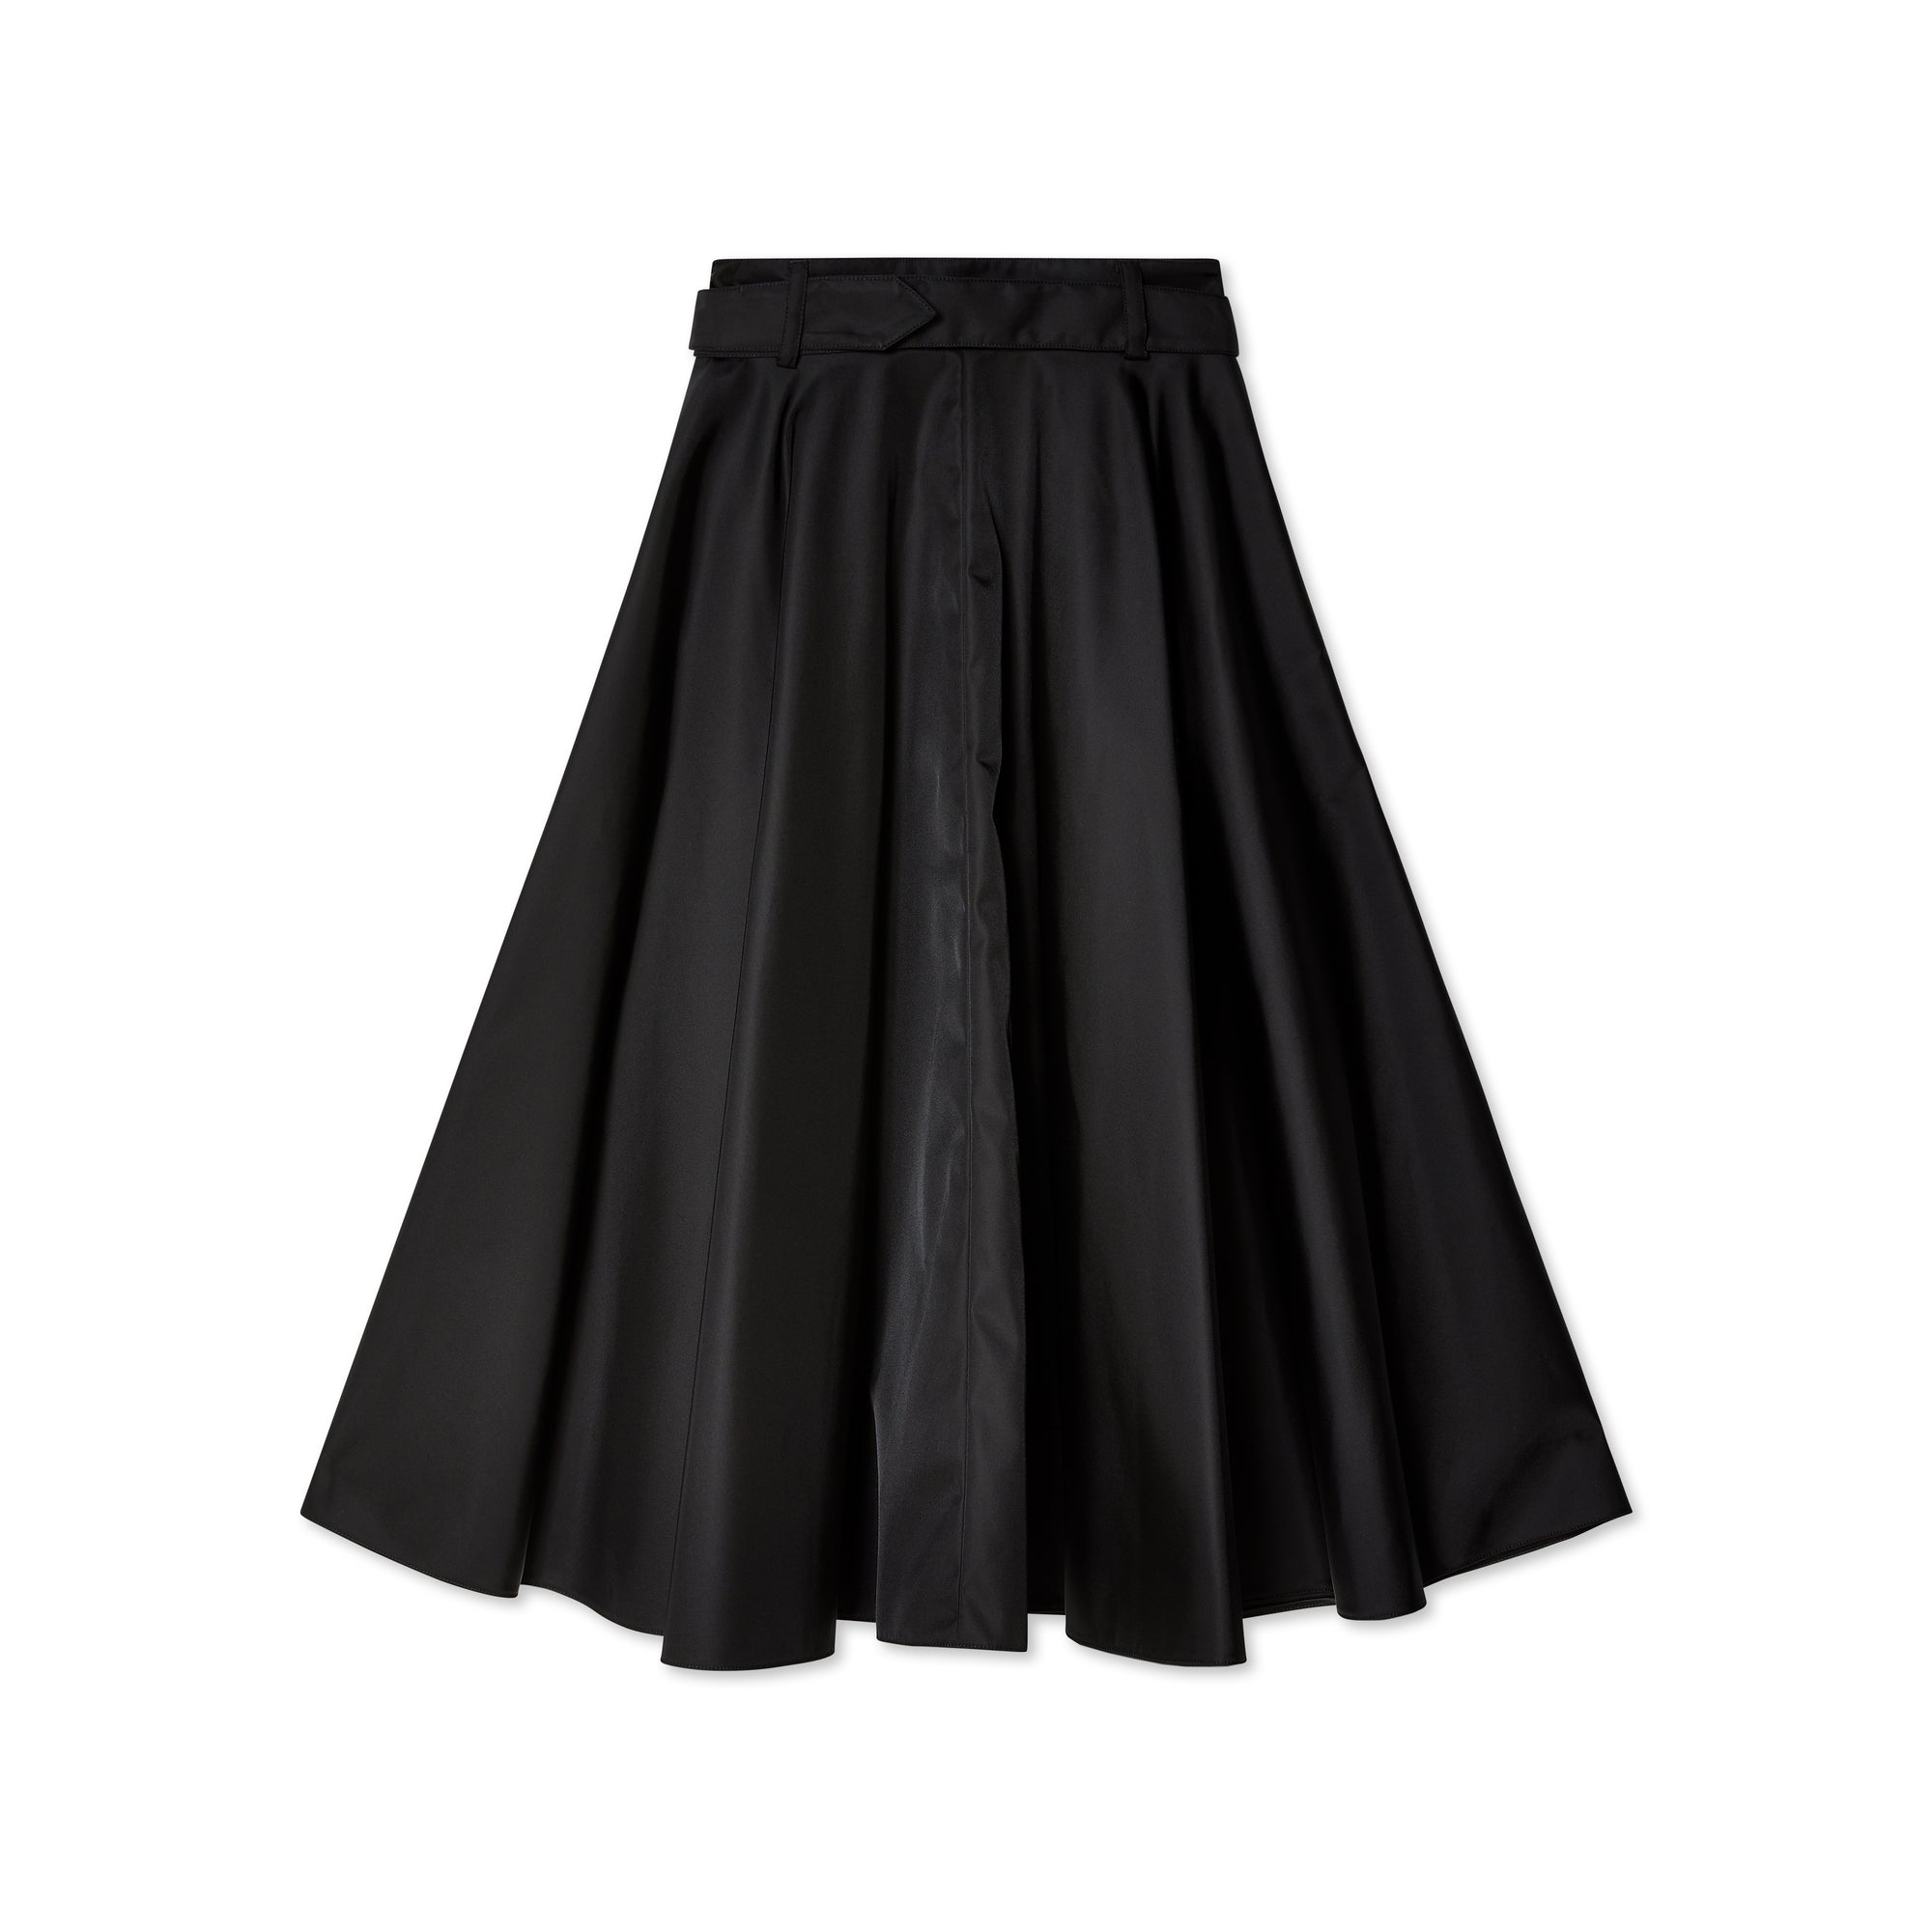 Prada - Women's Skirt - (Black) view 2